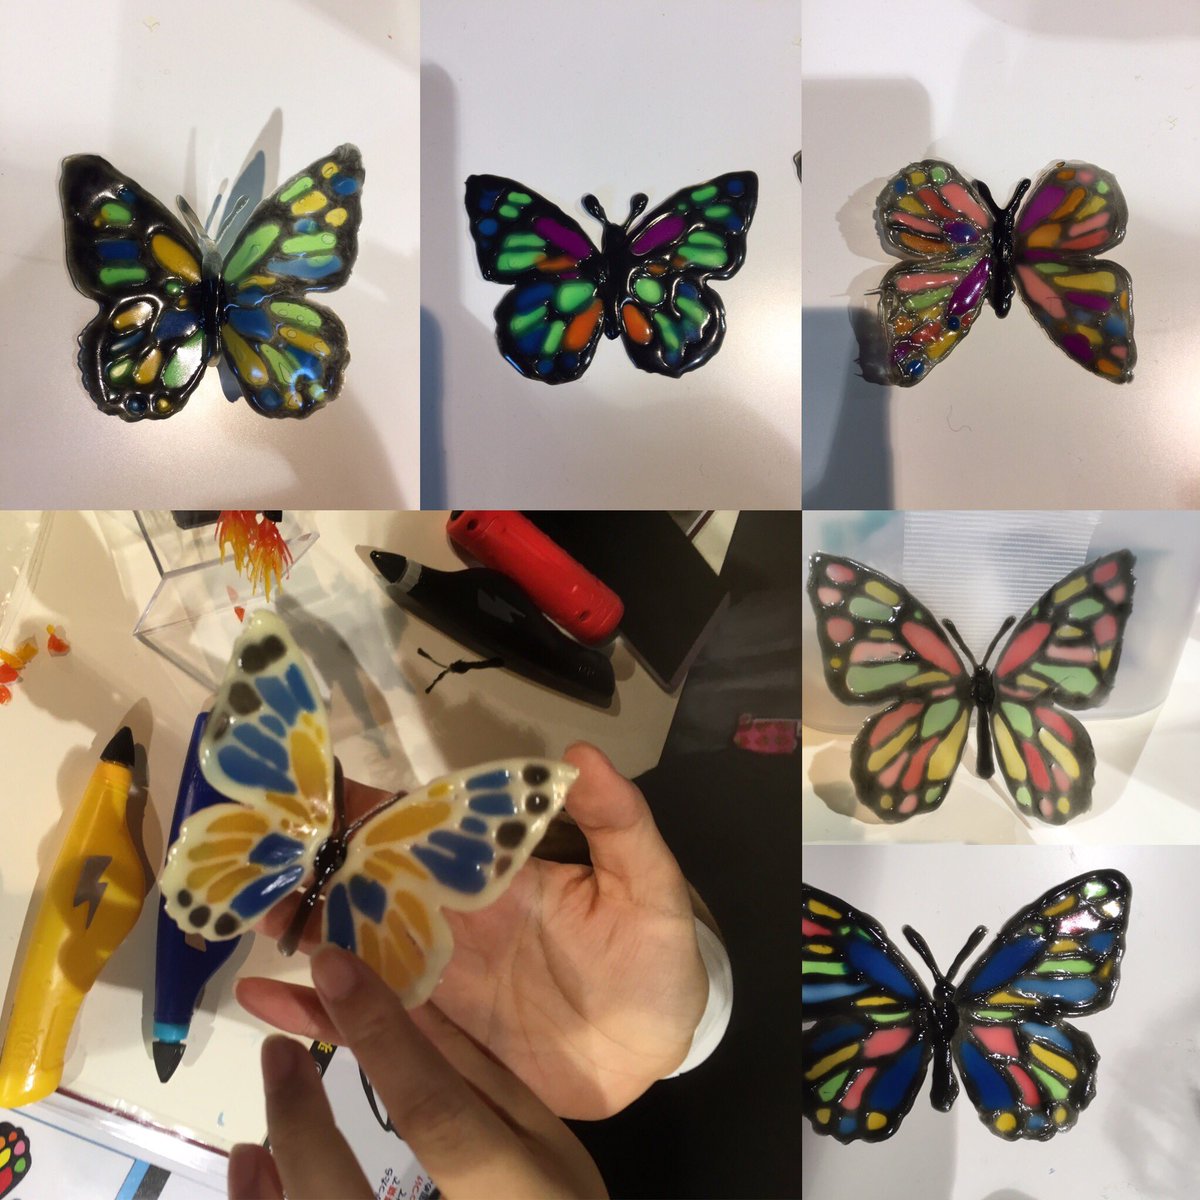 ３dドリームアーツペン 公式 メガホビexpo体験会は 蝶々 食品サンプル風カレーライス フィギュア用マスク エフェクトパーツです 皆さんの作品画像upします まずは蝶々です 3dドリームアーツペン